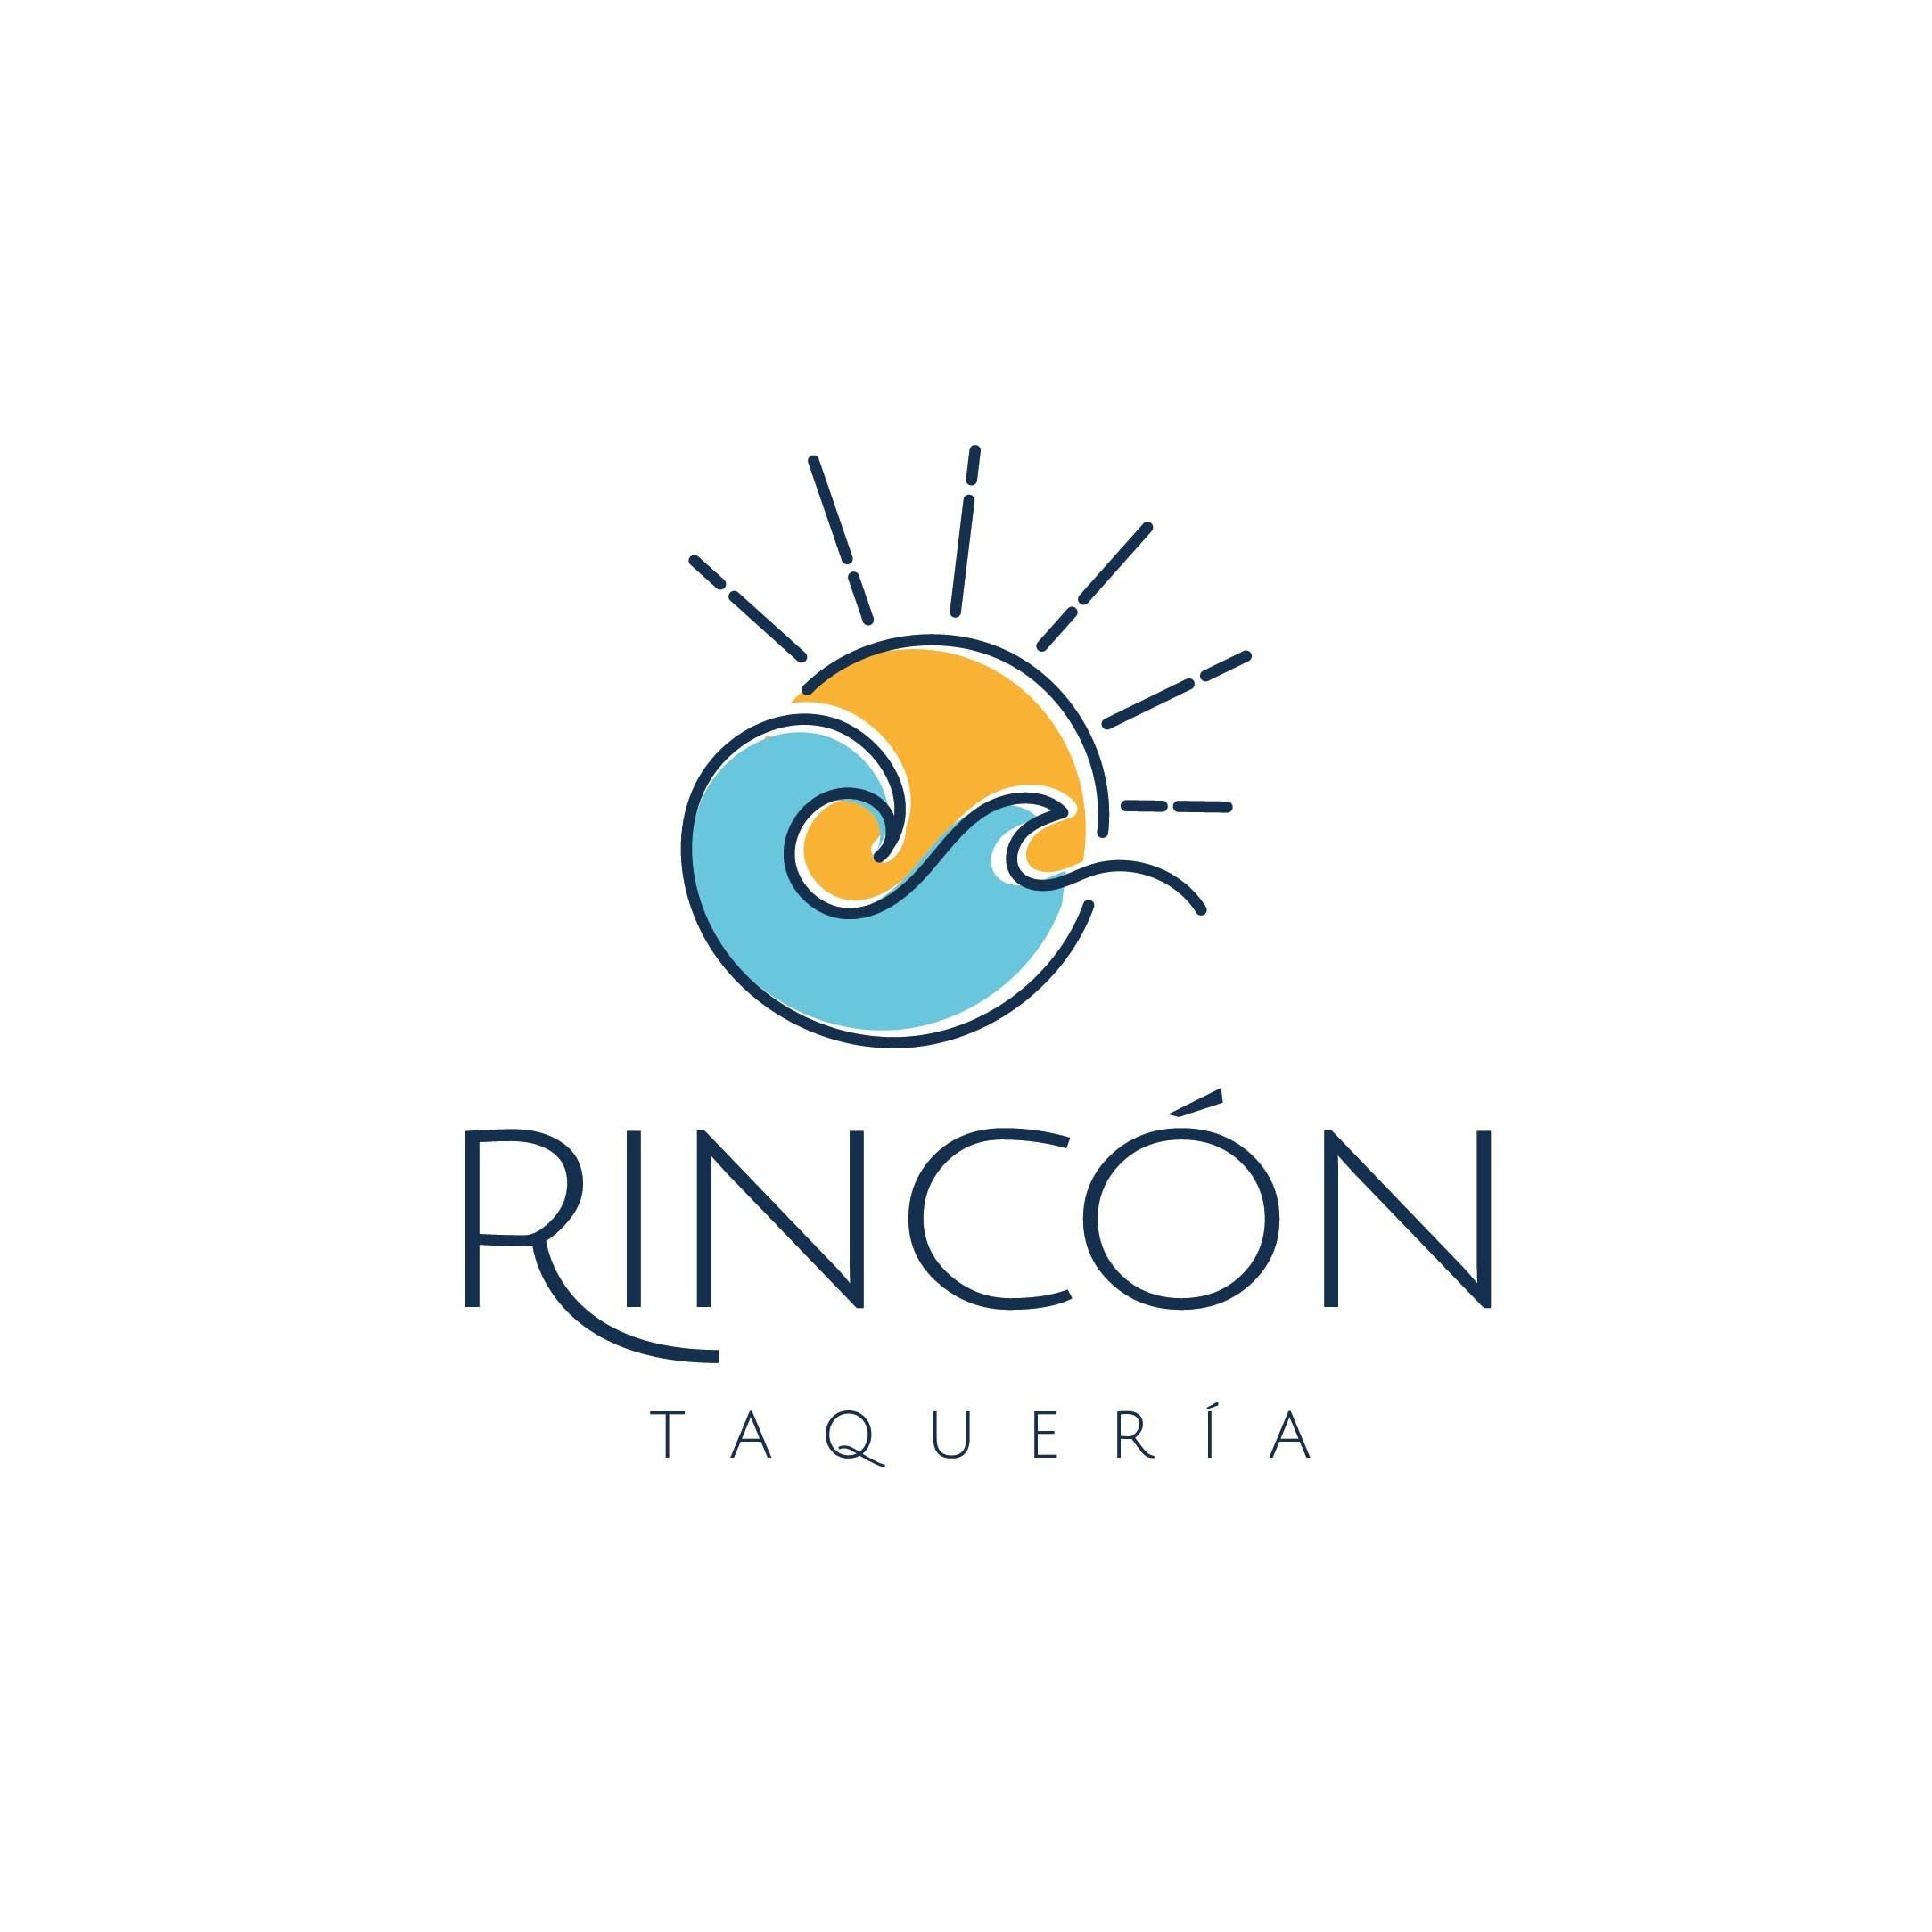 Rincon Taqueria